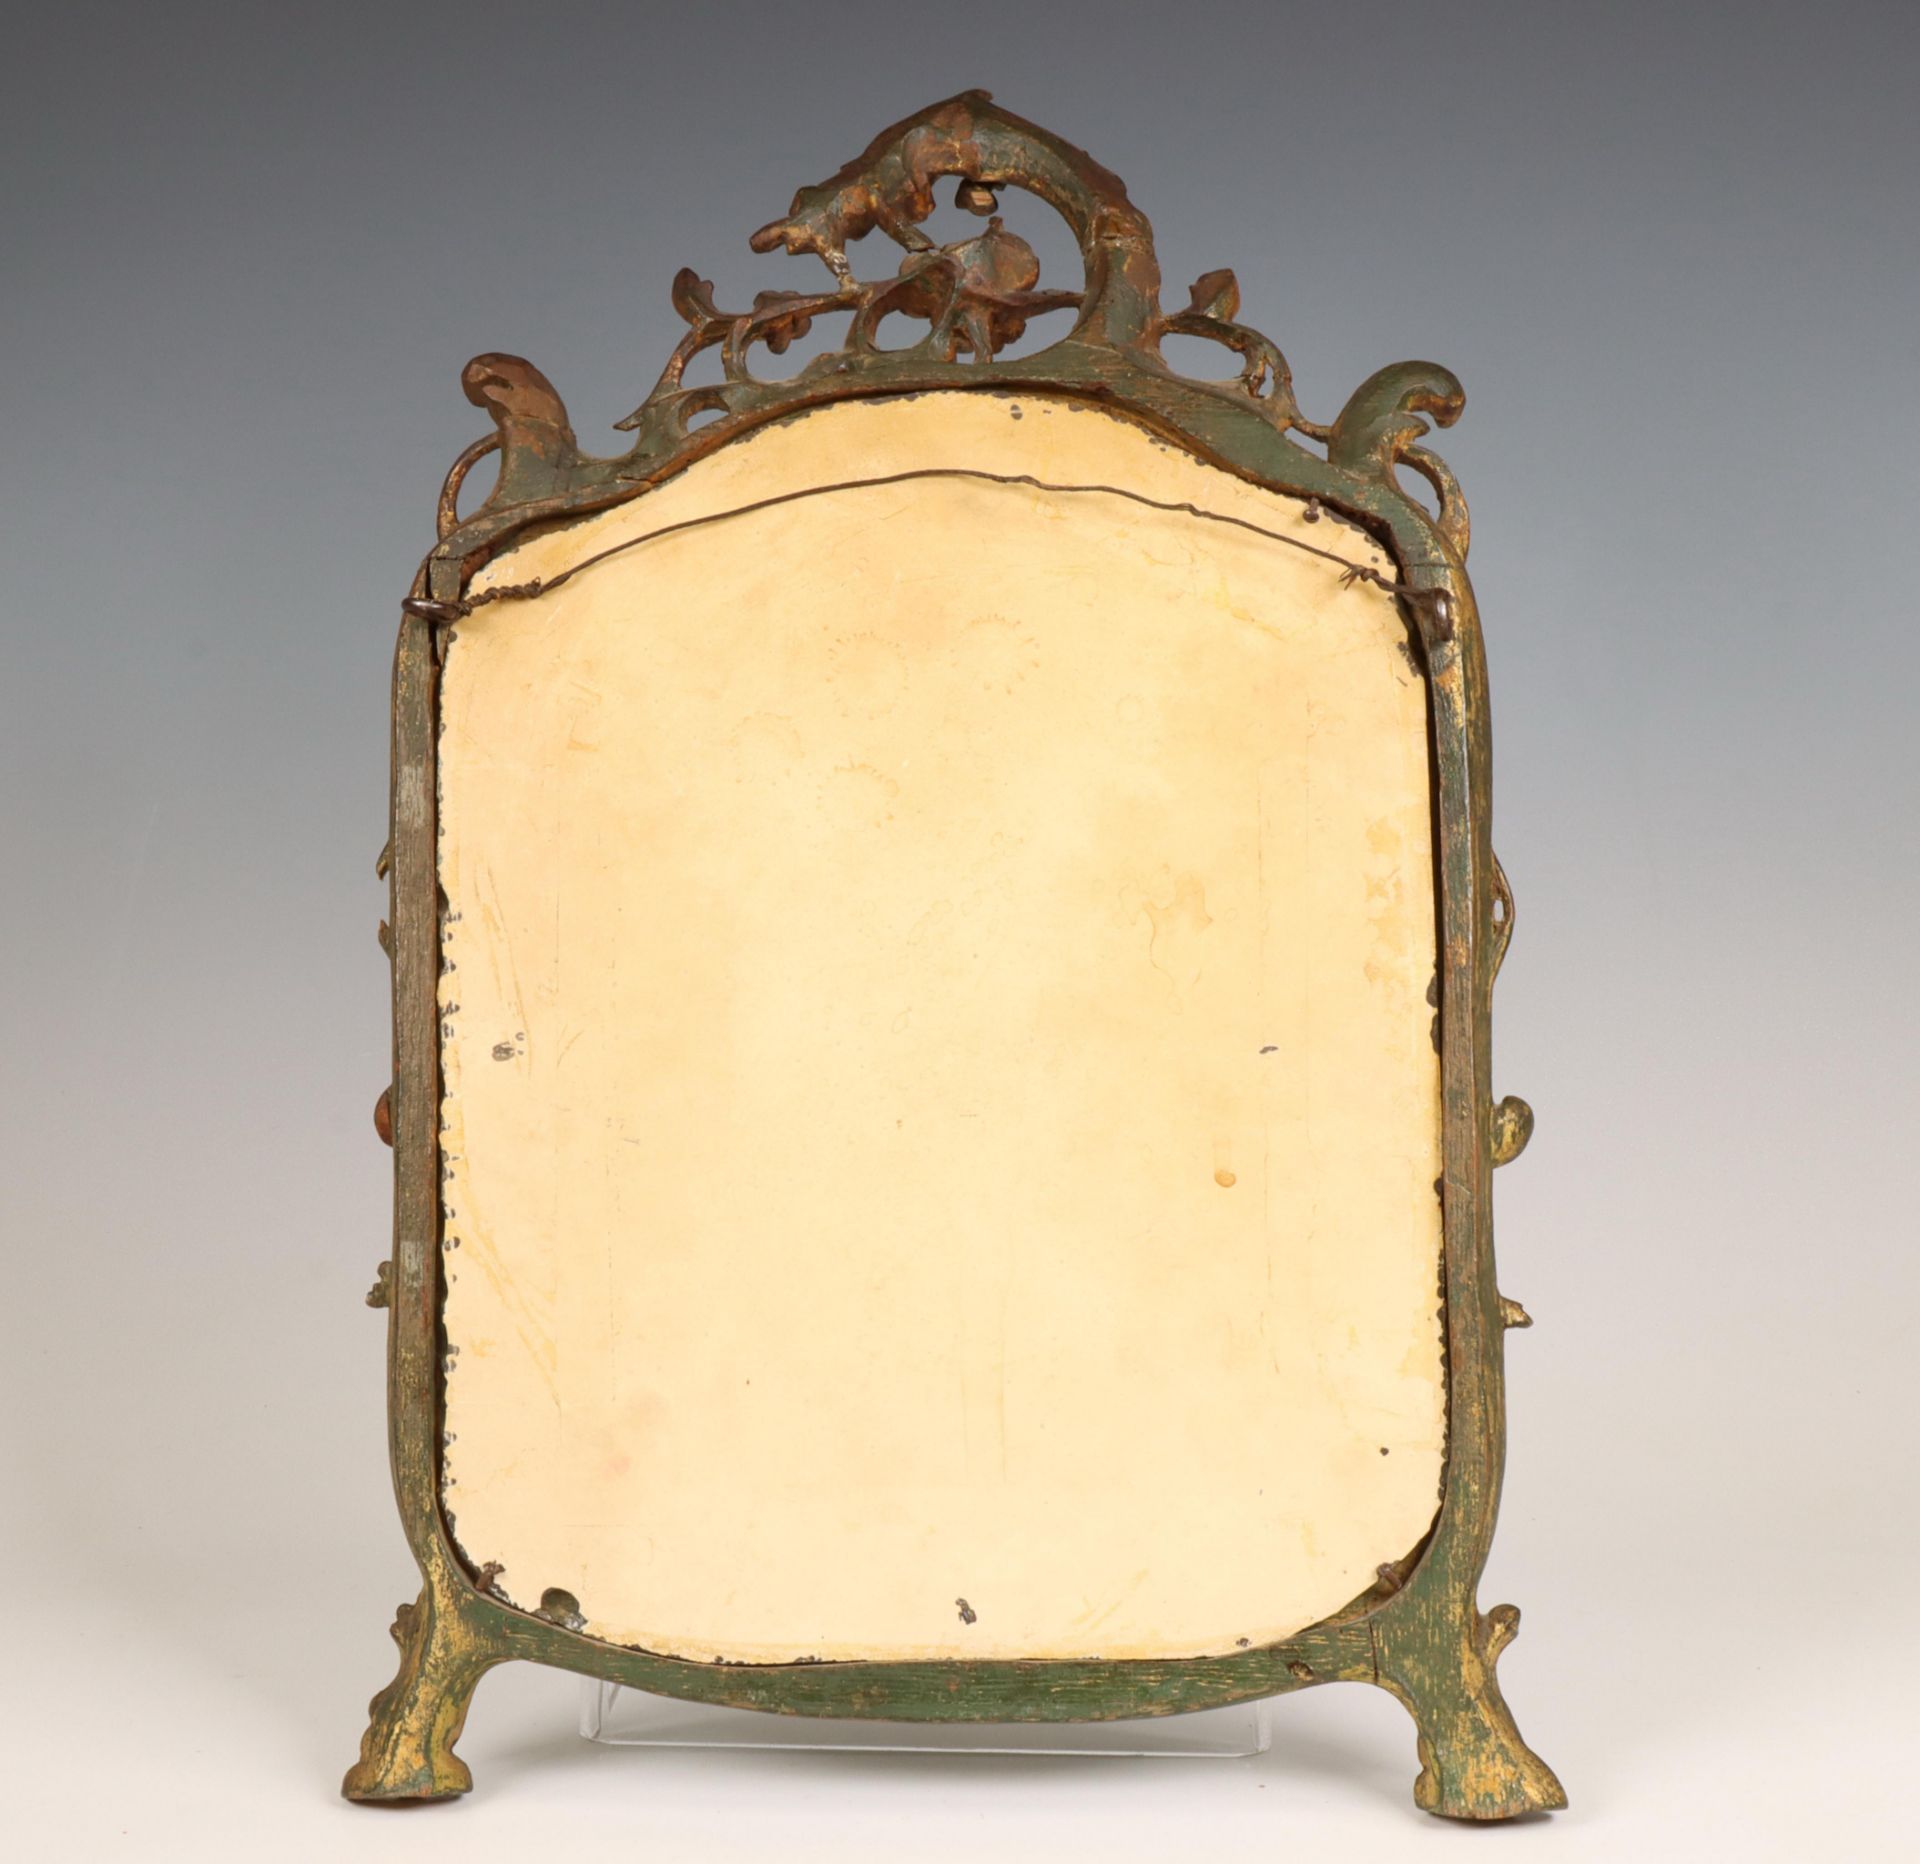 Holland, spiegel in gestoken houten lijst, Louis XV, 18e eeuw. - Bild 2 aus 2